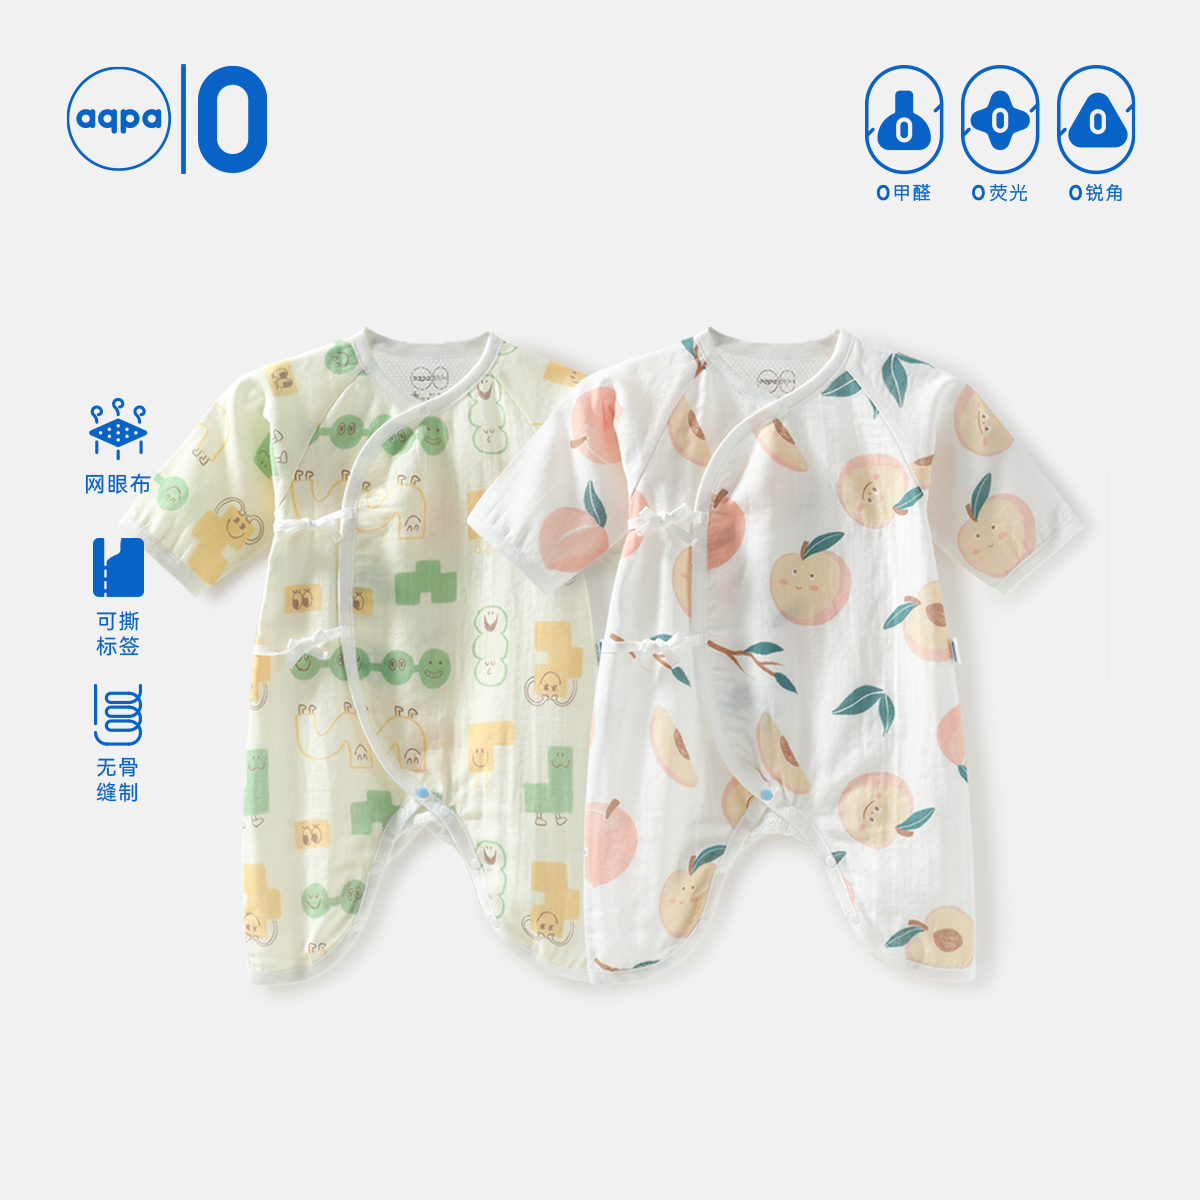 【呼呼纱】aqpa新生儿连体衣婴儿蝴蝶衣纯棉新款宝宝衣服睡衣可爱